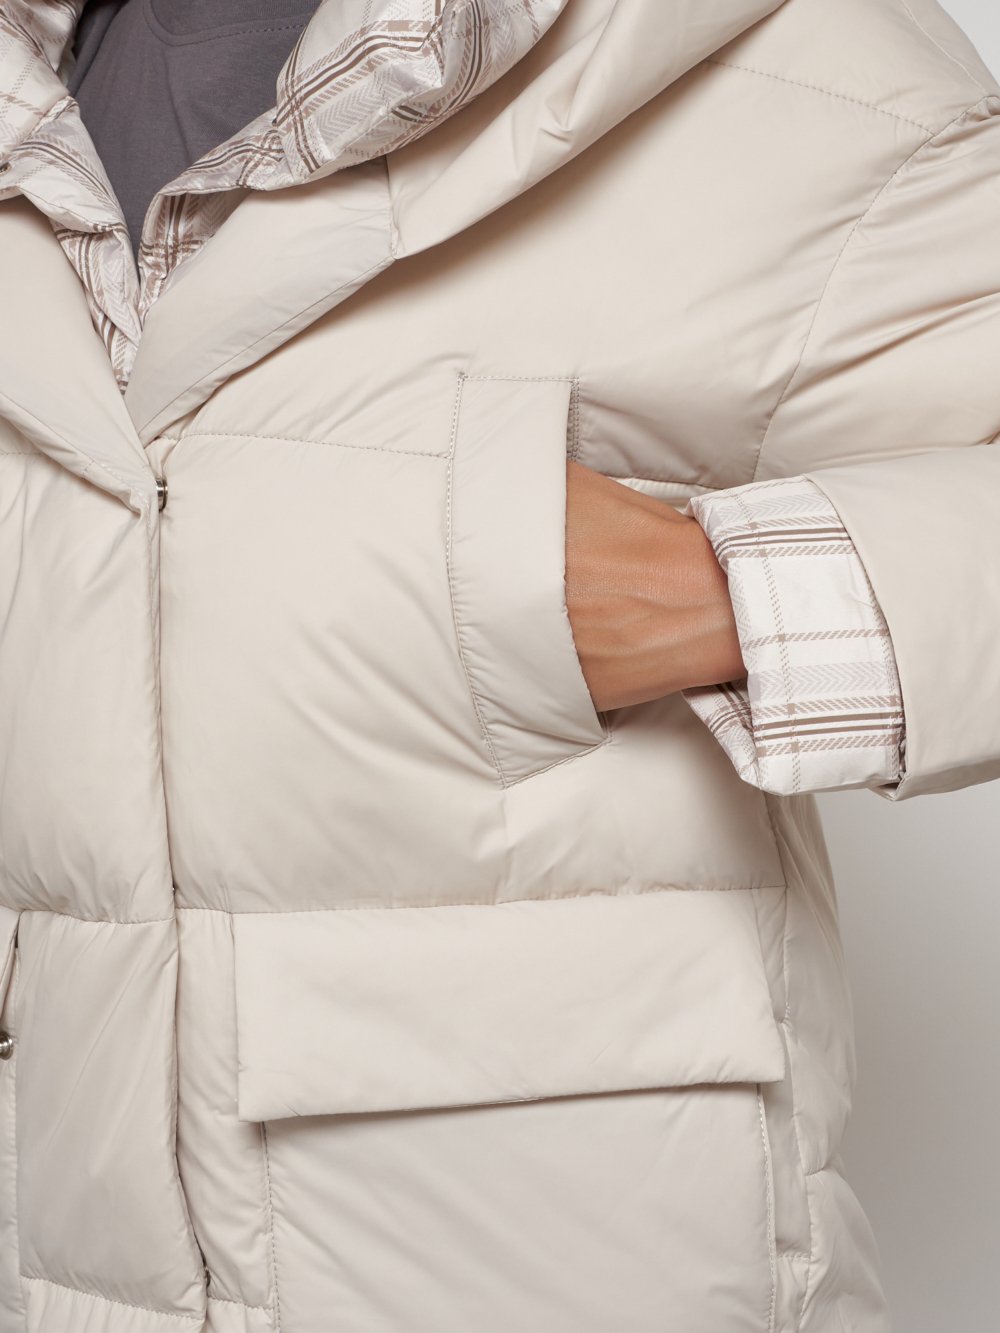 Купить куртку женскую зимнюю оптом от производителя недорого в Москве 133105B 1